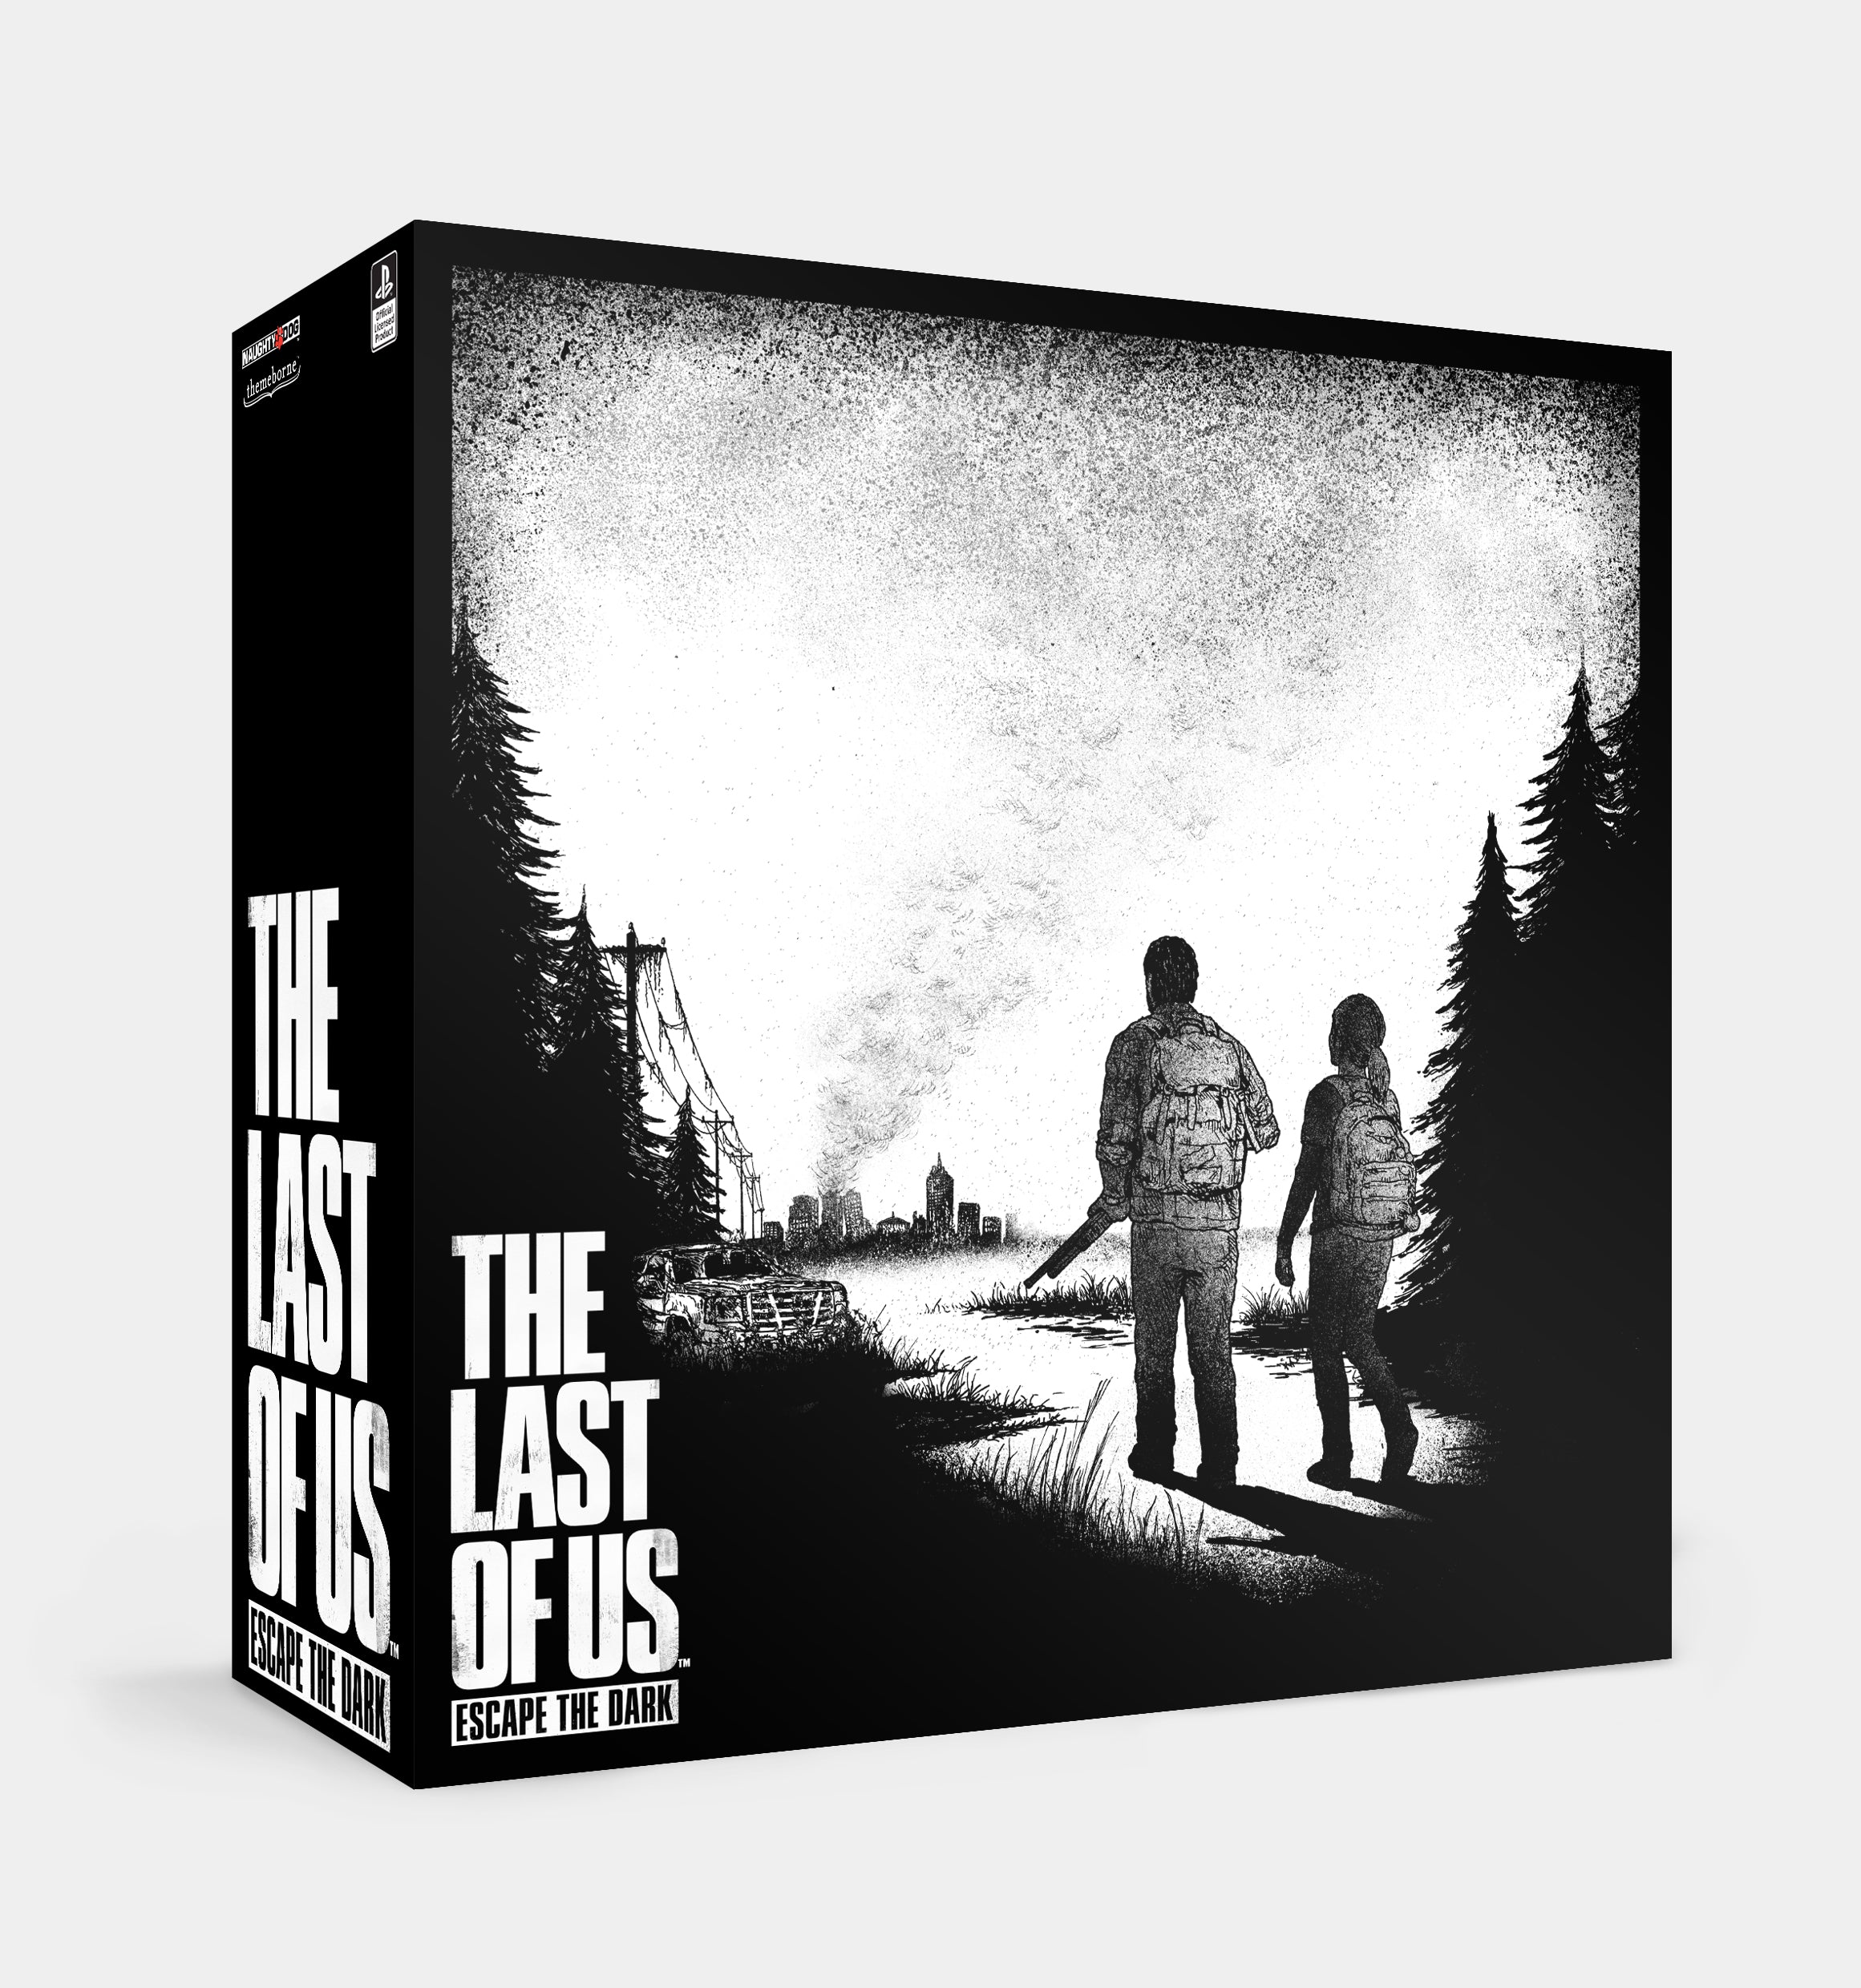 PRE-ORDER - The Last of Us: Escape the Dark – Themeborne Ltd